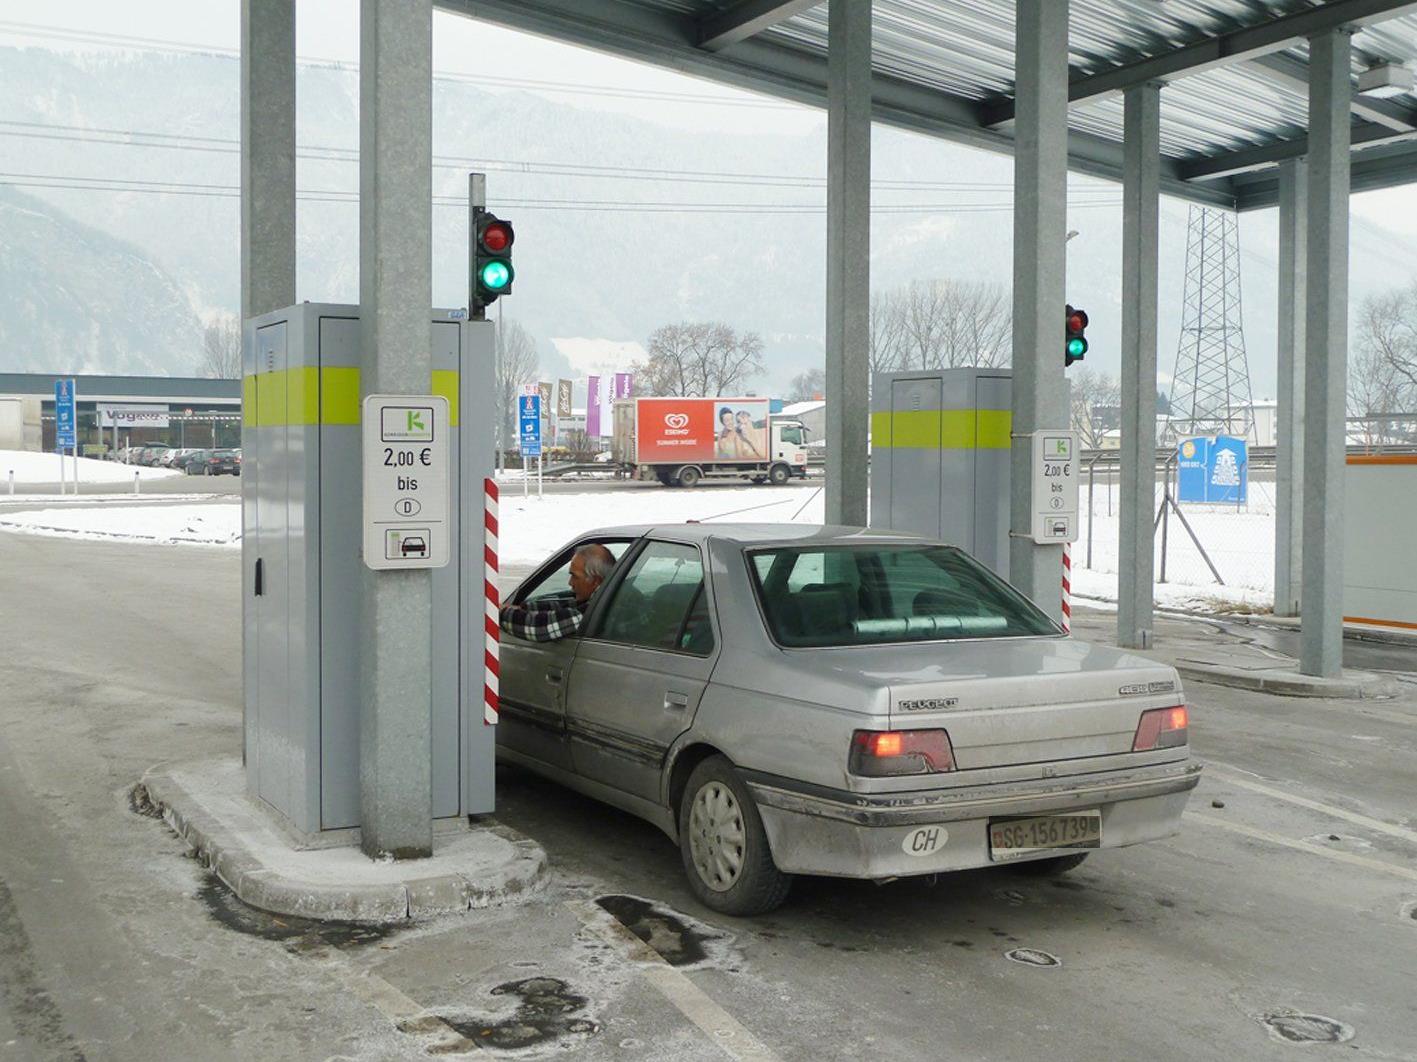 Die Automaten für die Korridorvignette an der Autobahnauffahrt Hohenems sollen spätestens Ende 2013 geschlossen werden.